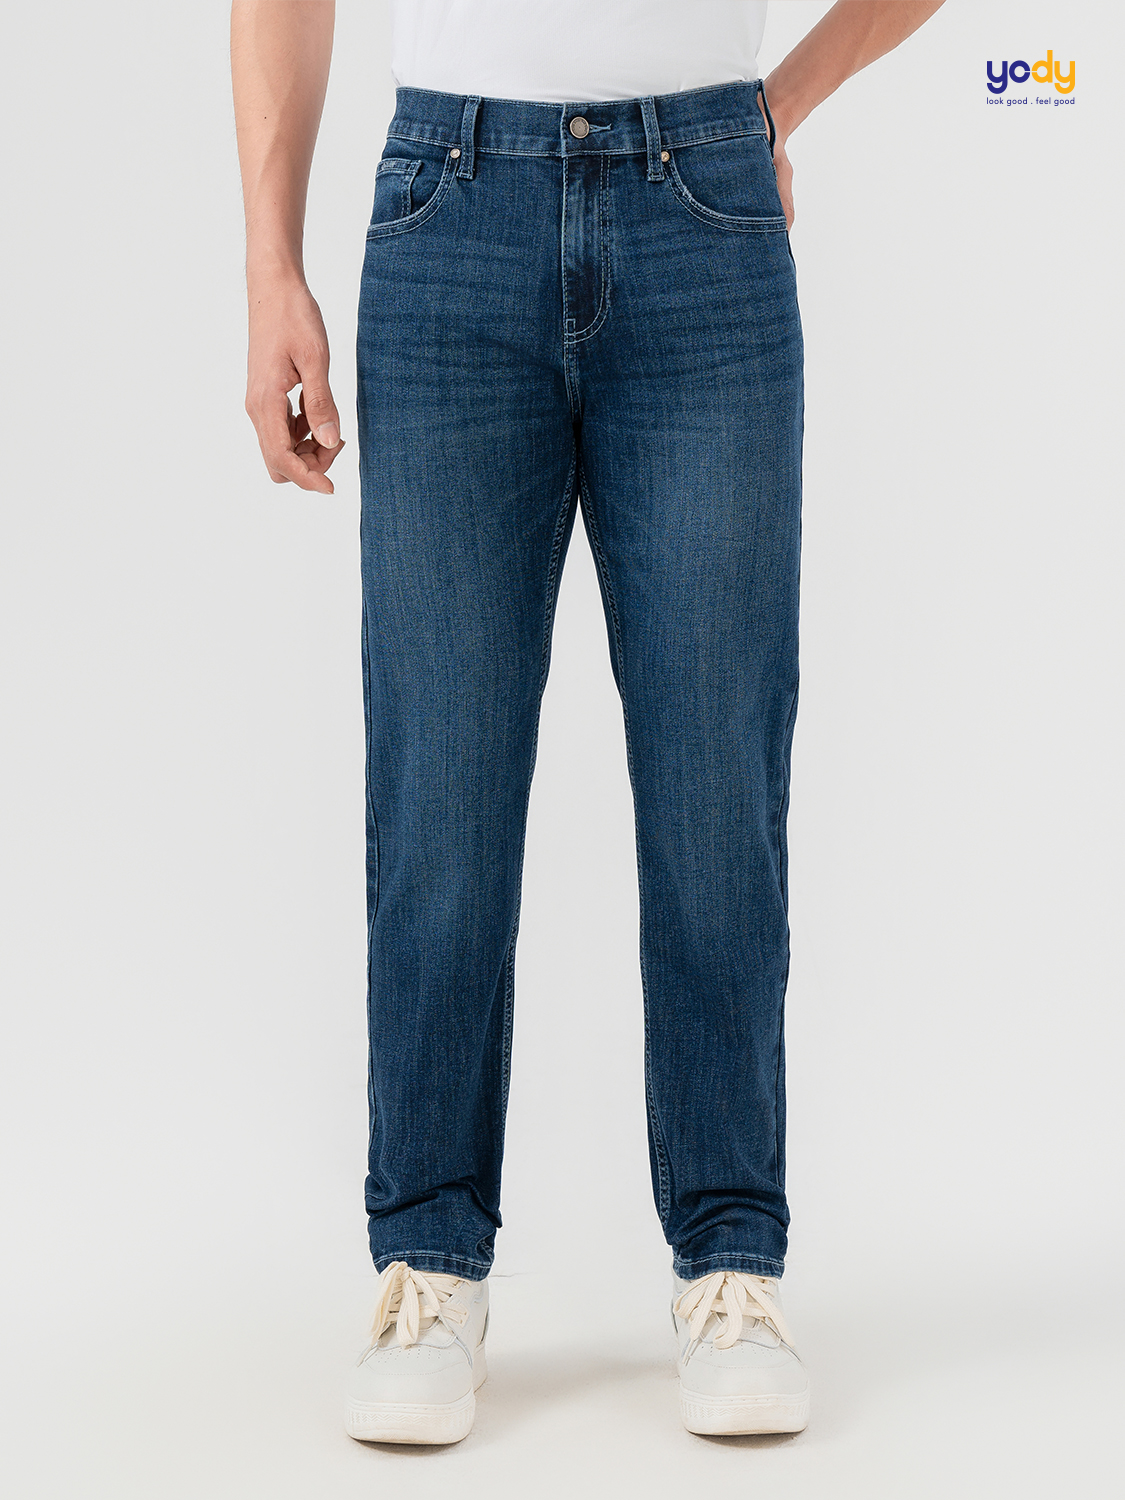 Quần jeans nam YODY dáng slimfit vải coolmax mài xước túi sau thoáng mát thấm hút mồ hôi tốt QJM7009